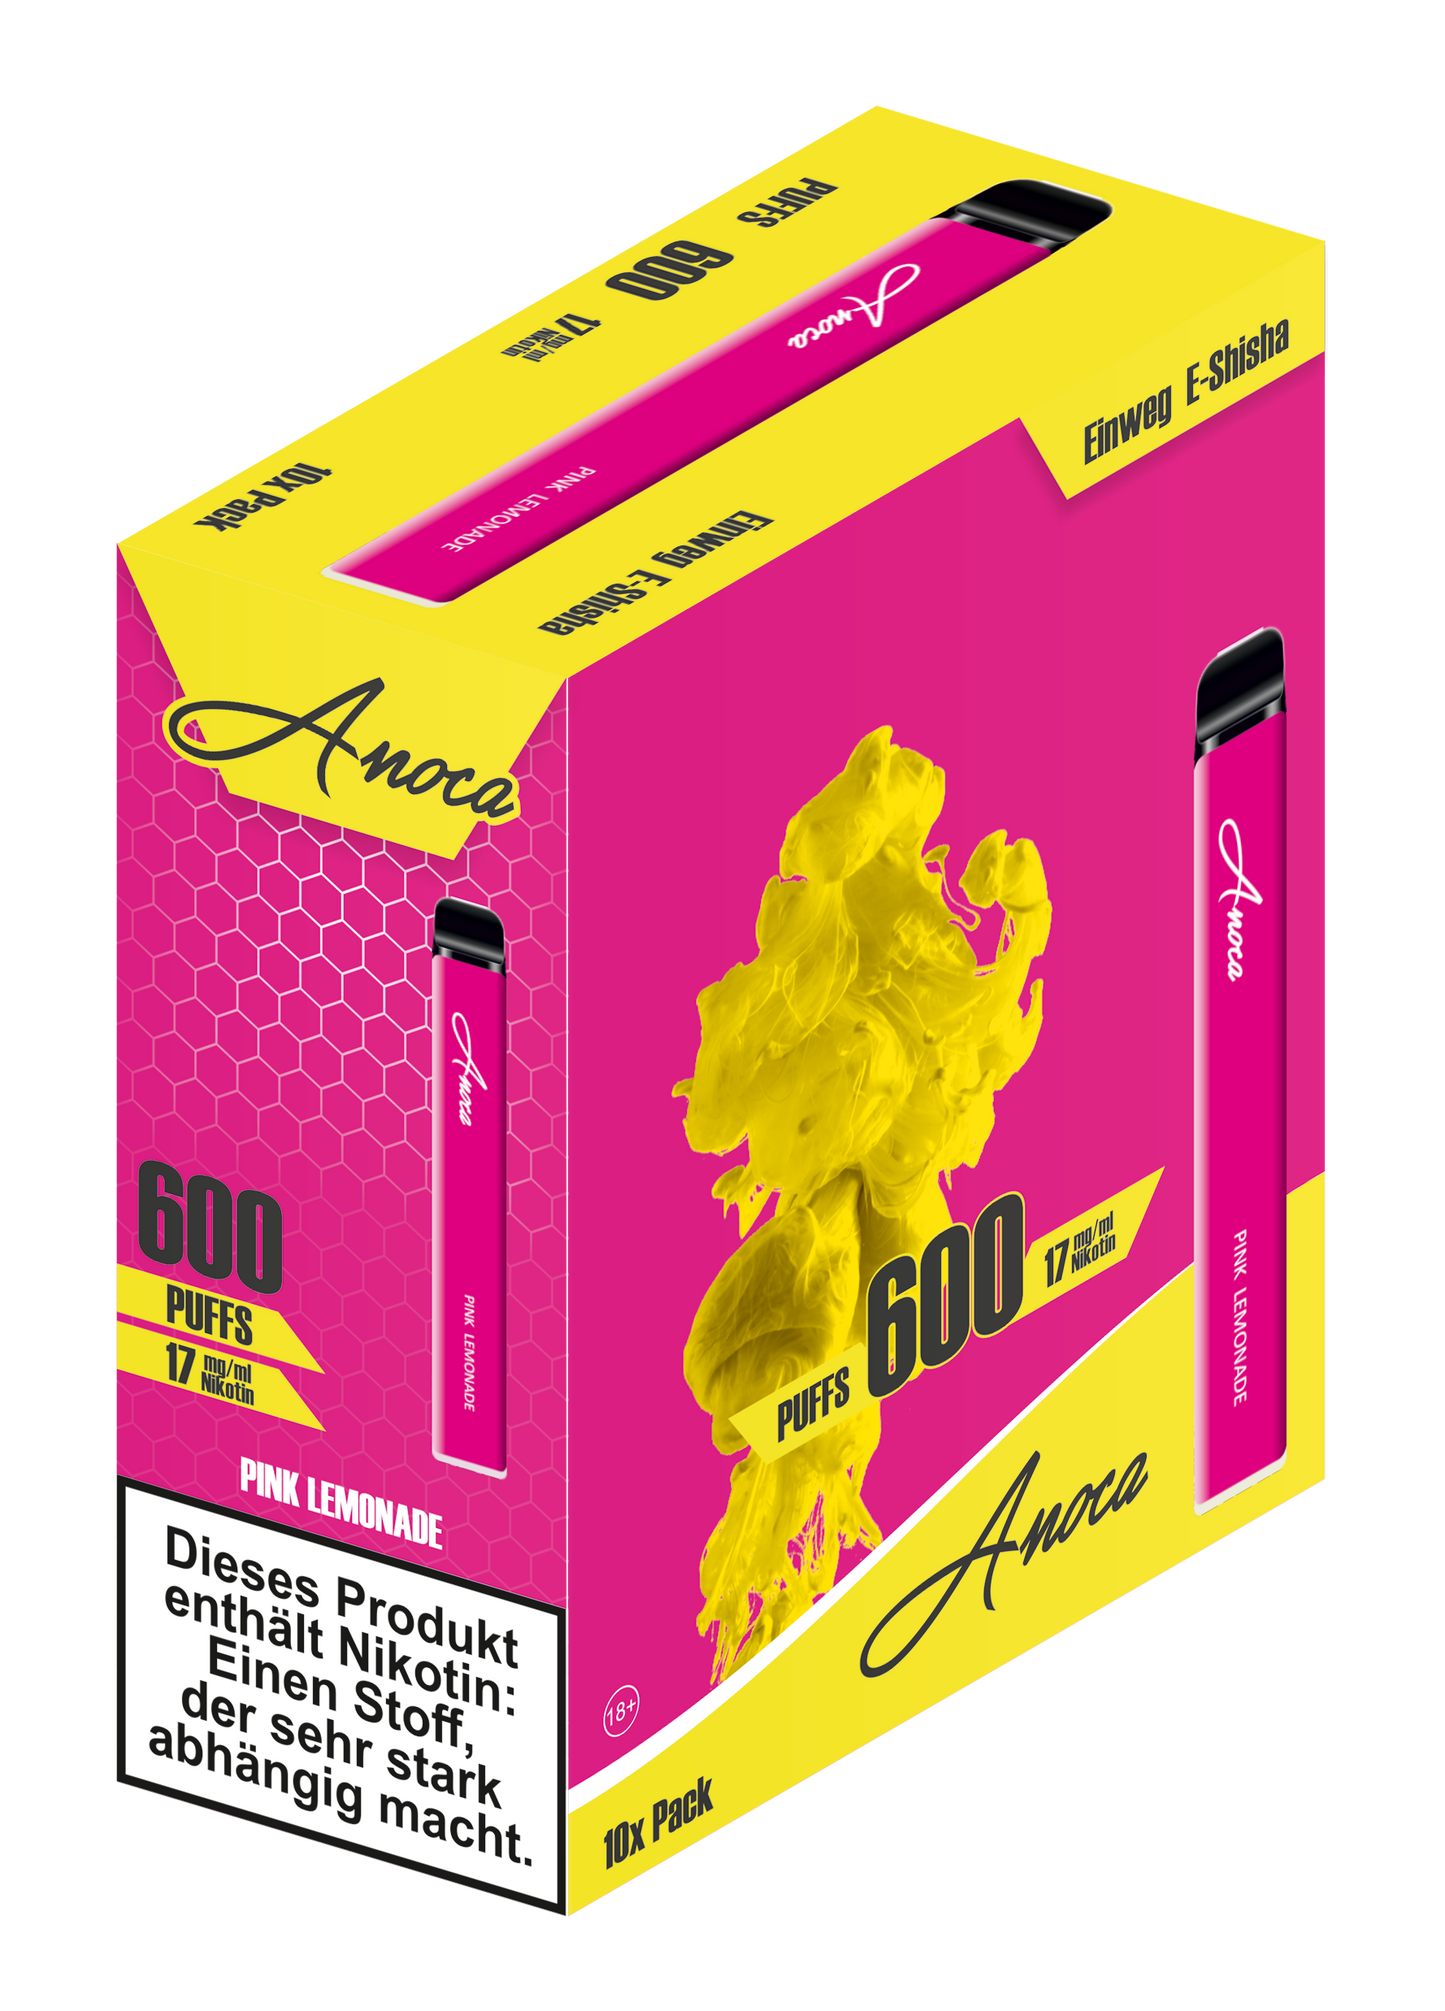 Anoca - Einweg E-Shisha 600 Puffs - Pink Lemonade - 10er Pack